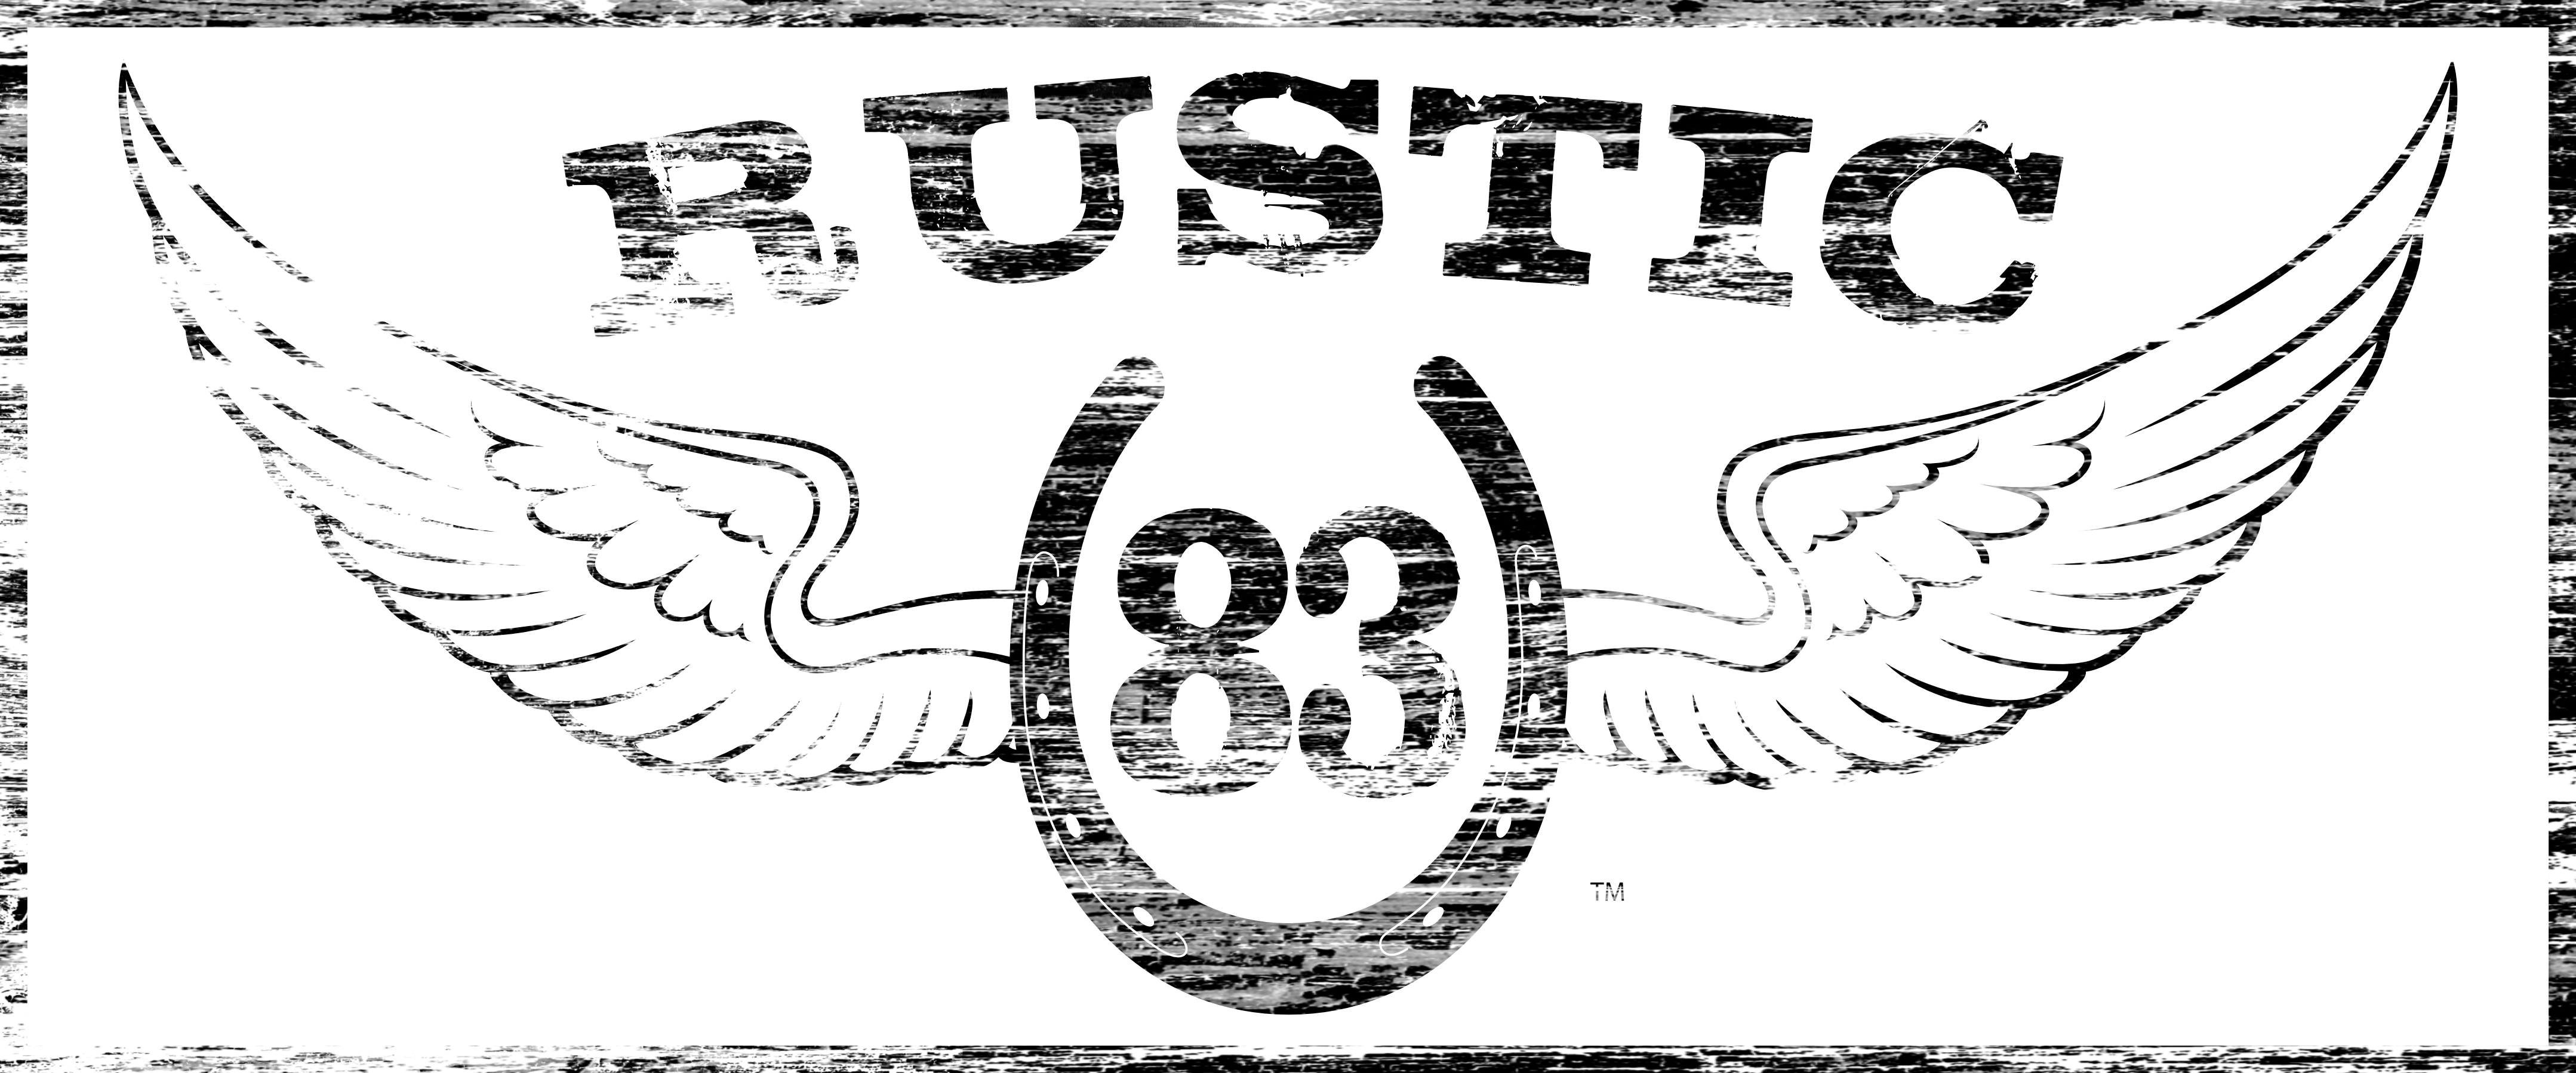 Rustic 83 